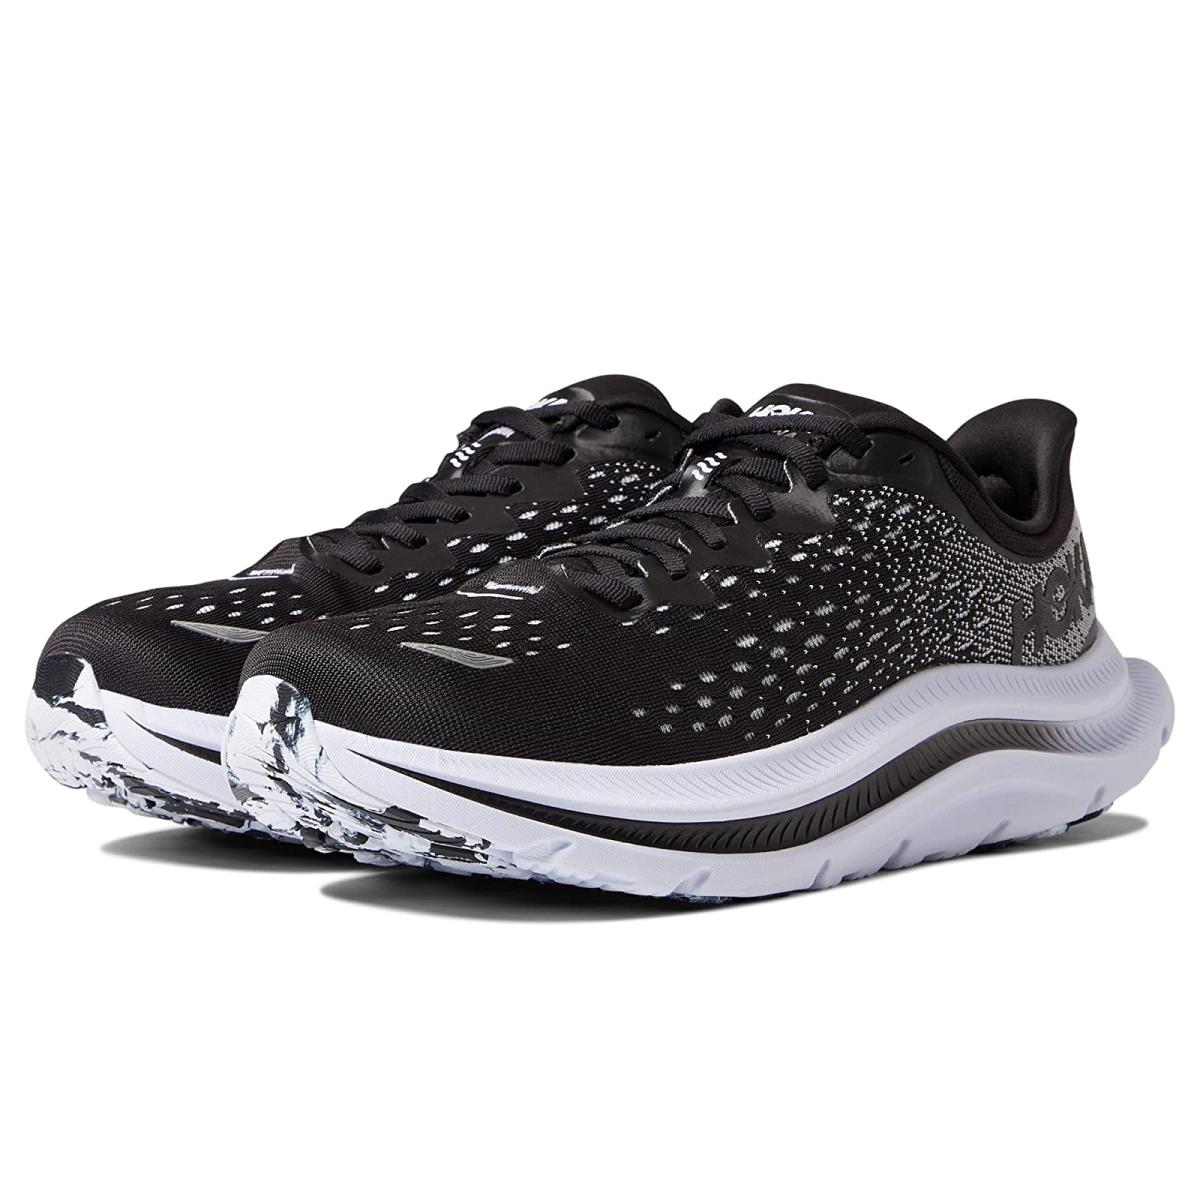 Hoka Kawana Men's Everyday Running Shoe - Black / White - Size 9.5